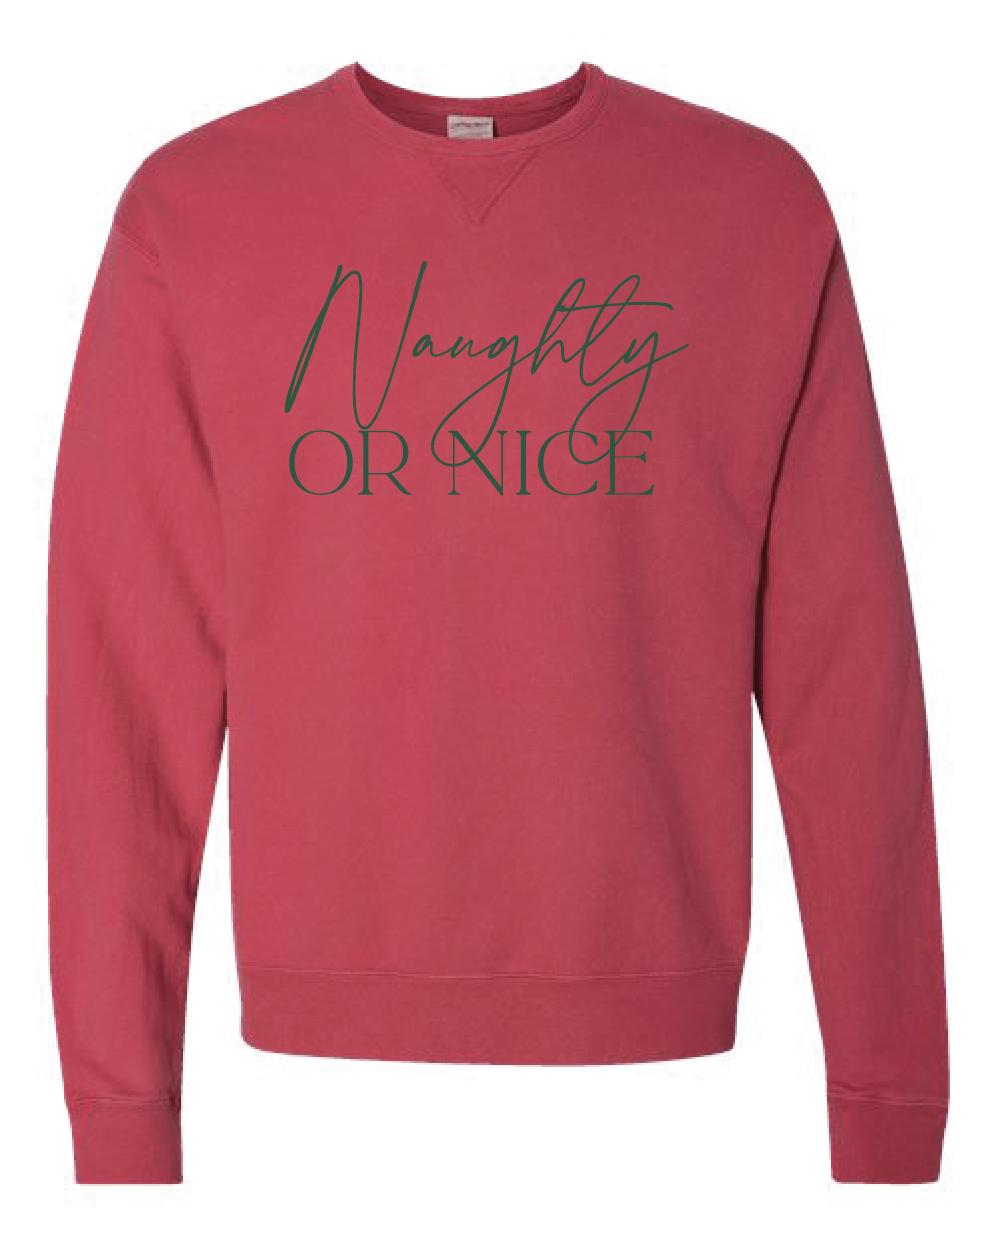 Naughty or Nice Sweatshirt